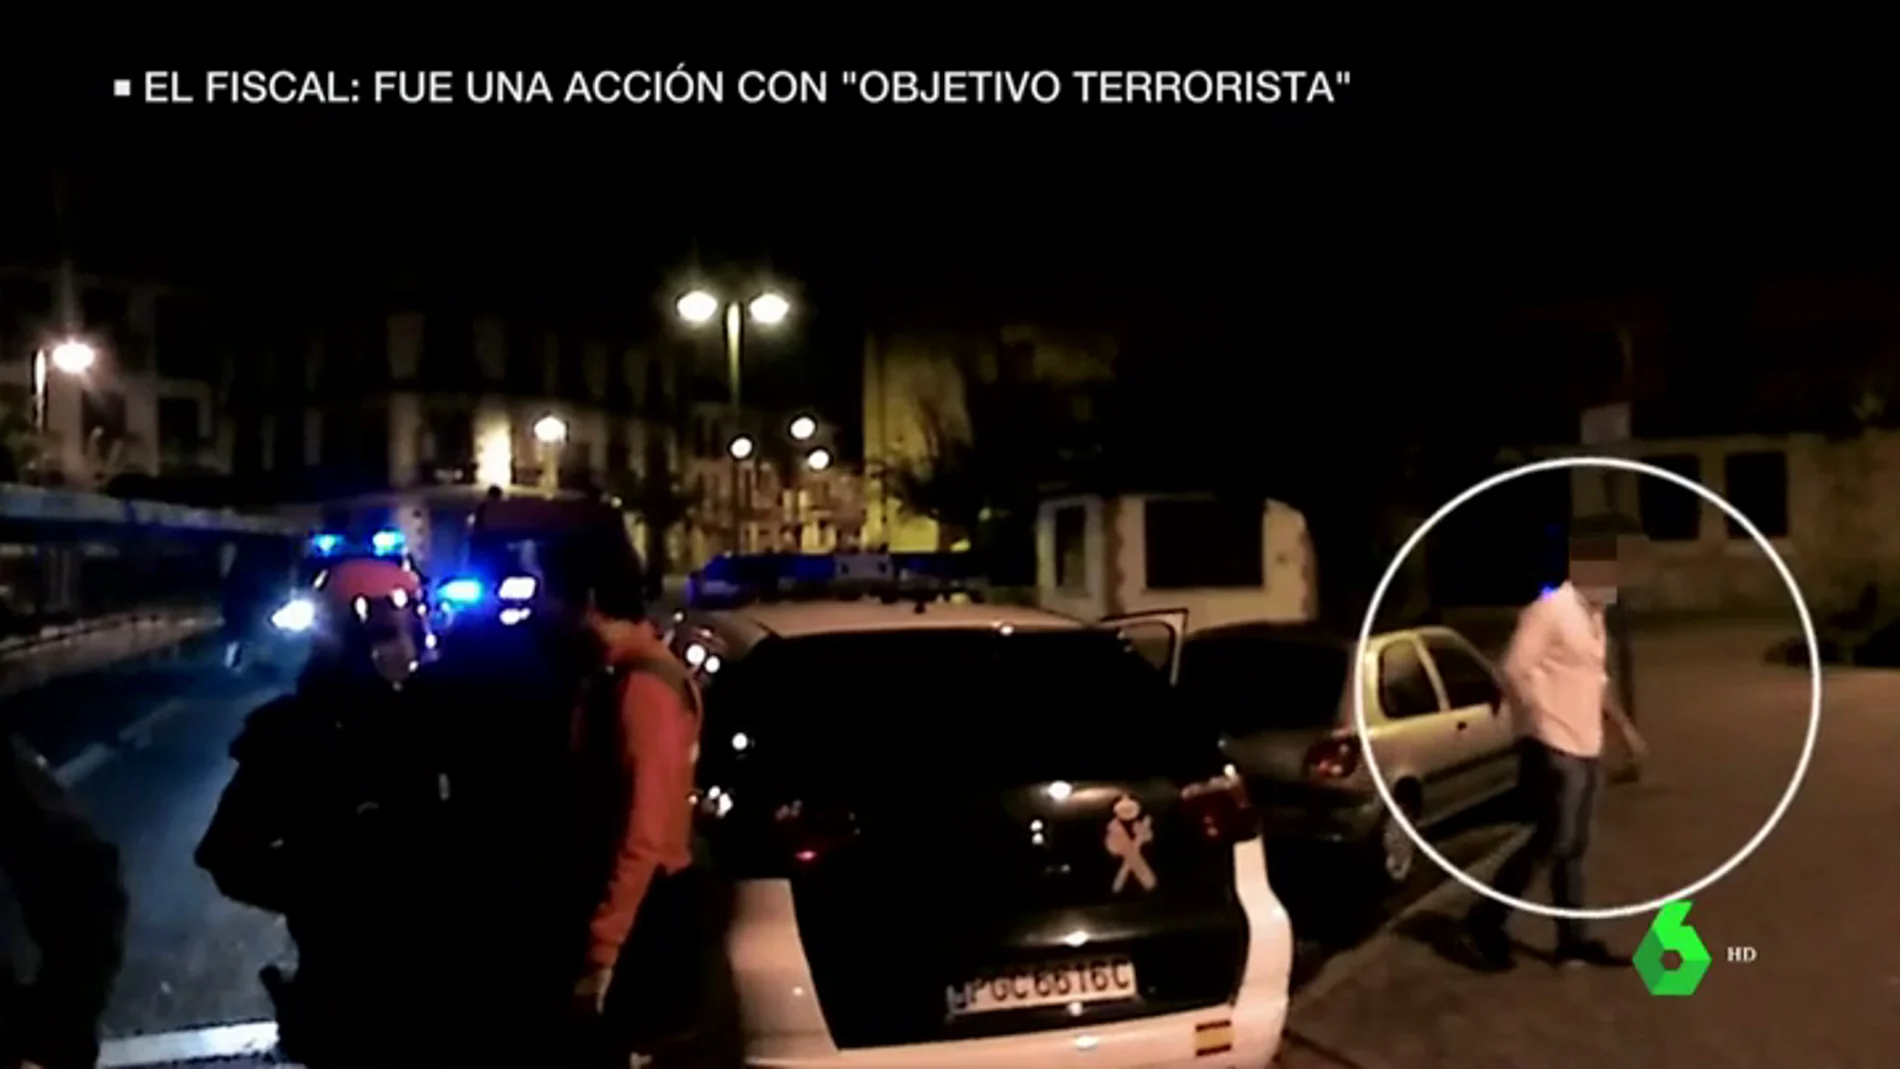 El vídeo de Alsasua grabado minutos después del enfrentamiento en el bar que el fiscal del caso tacha de "dudoso"